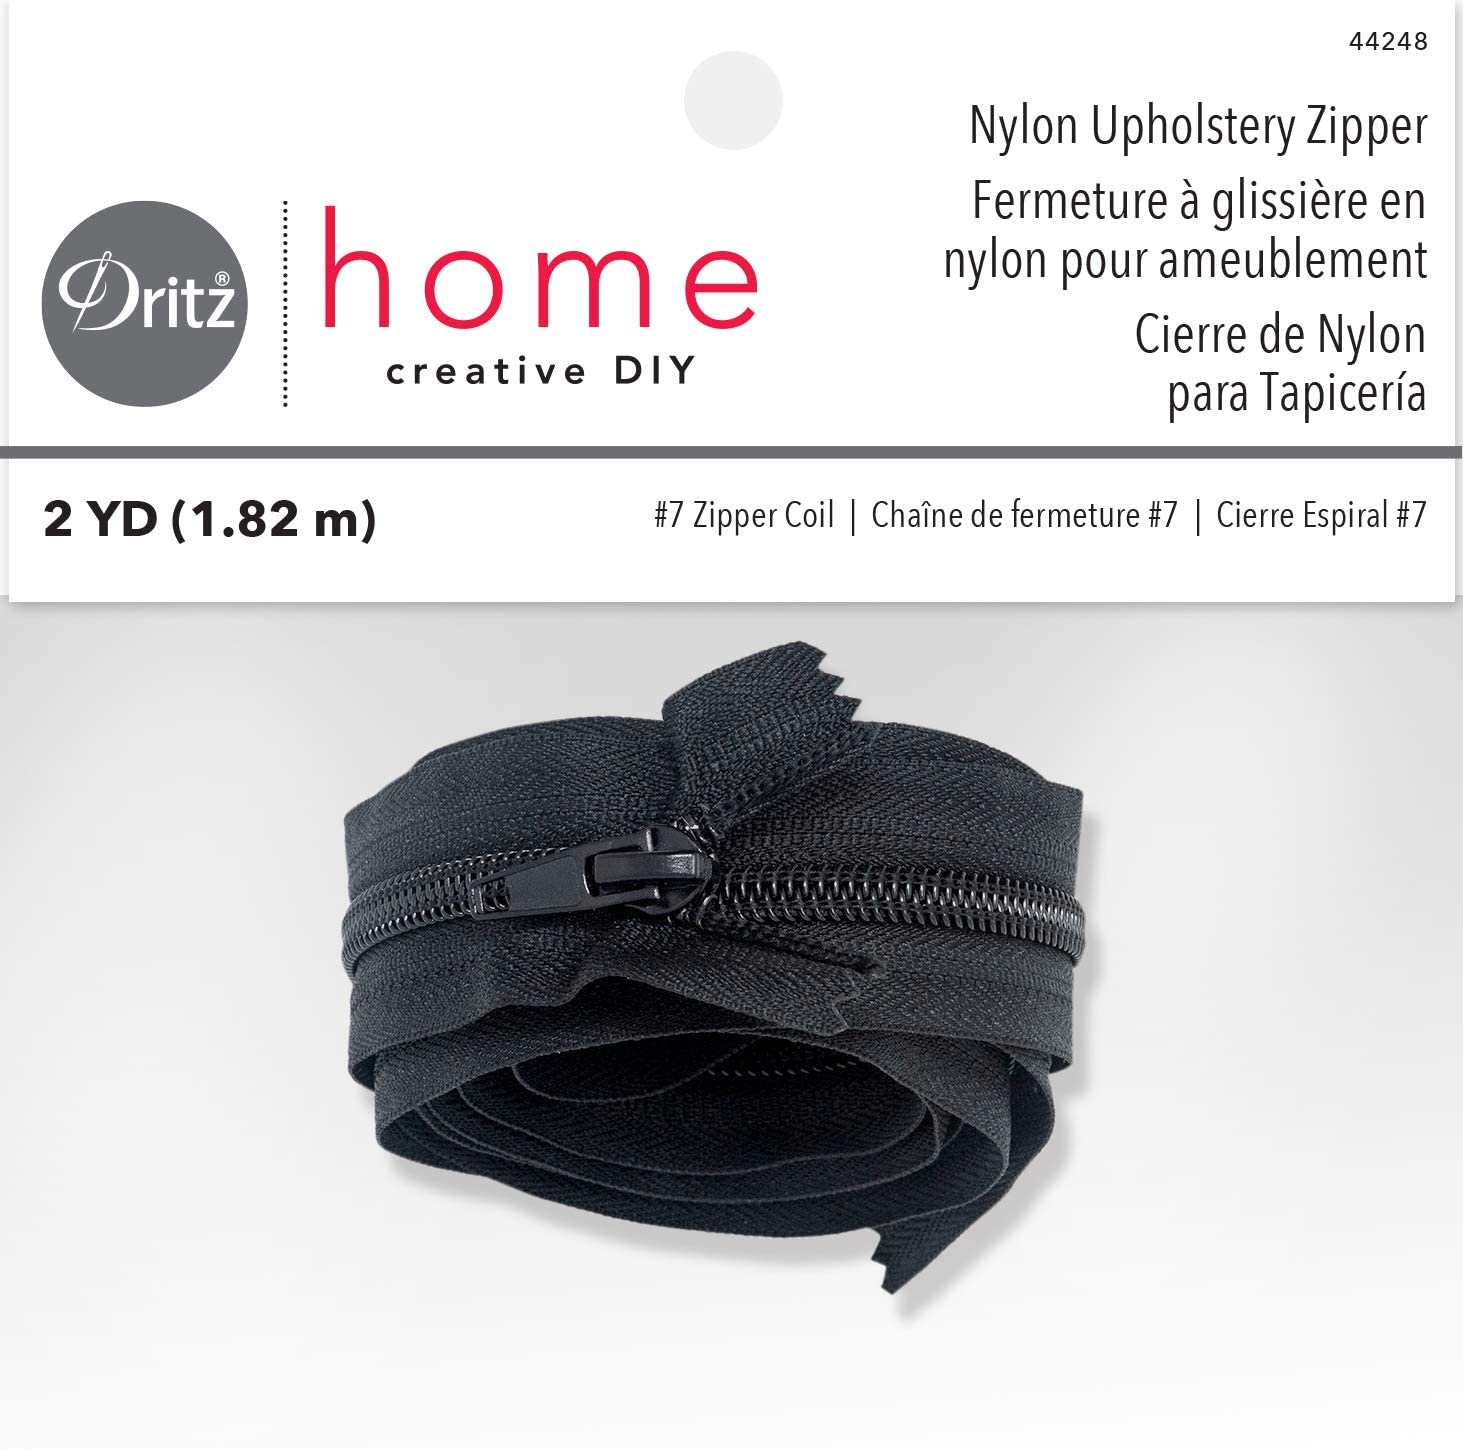 72 inch Nylon Upholstery Zipper